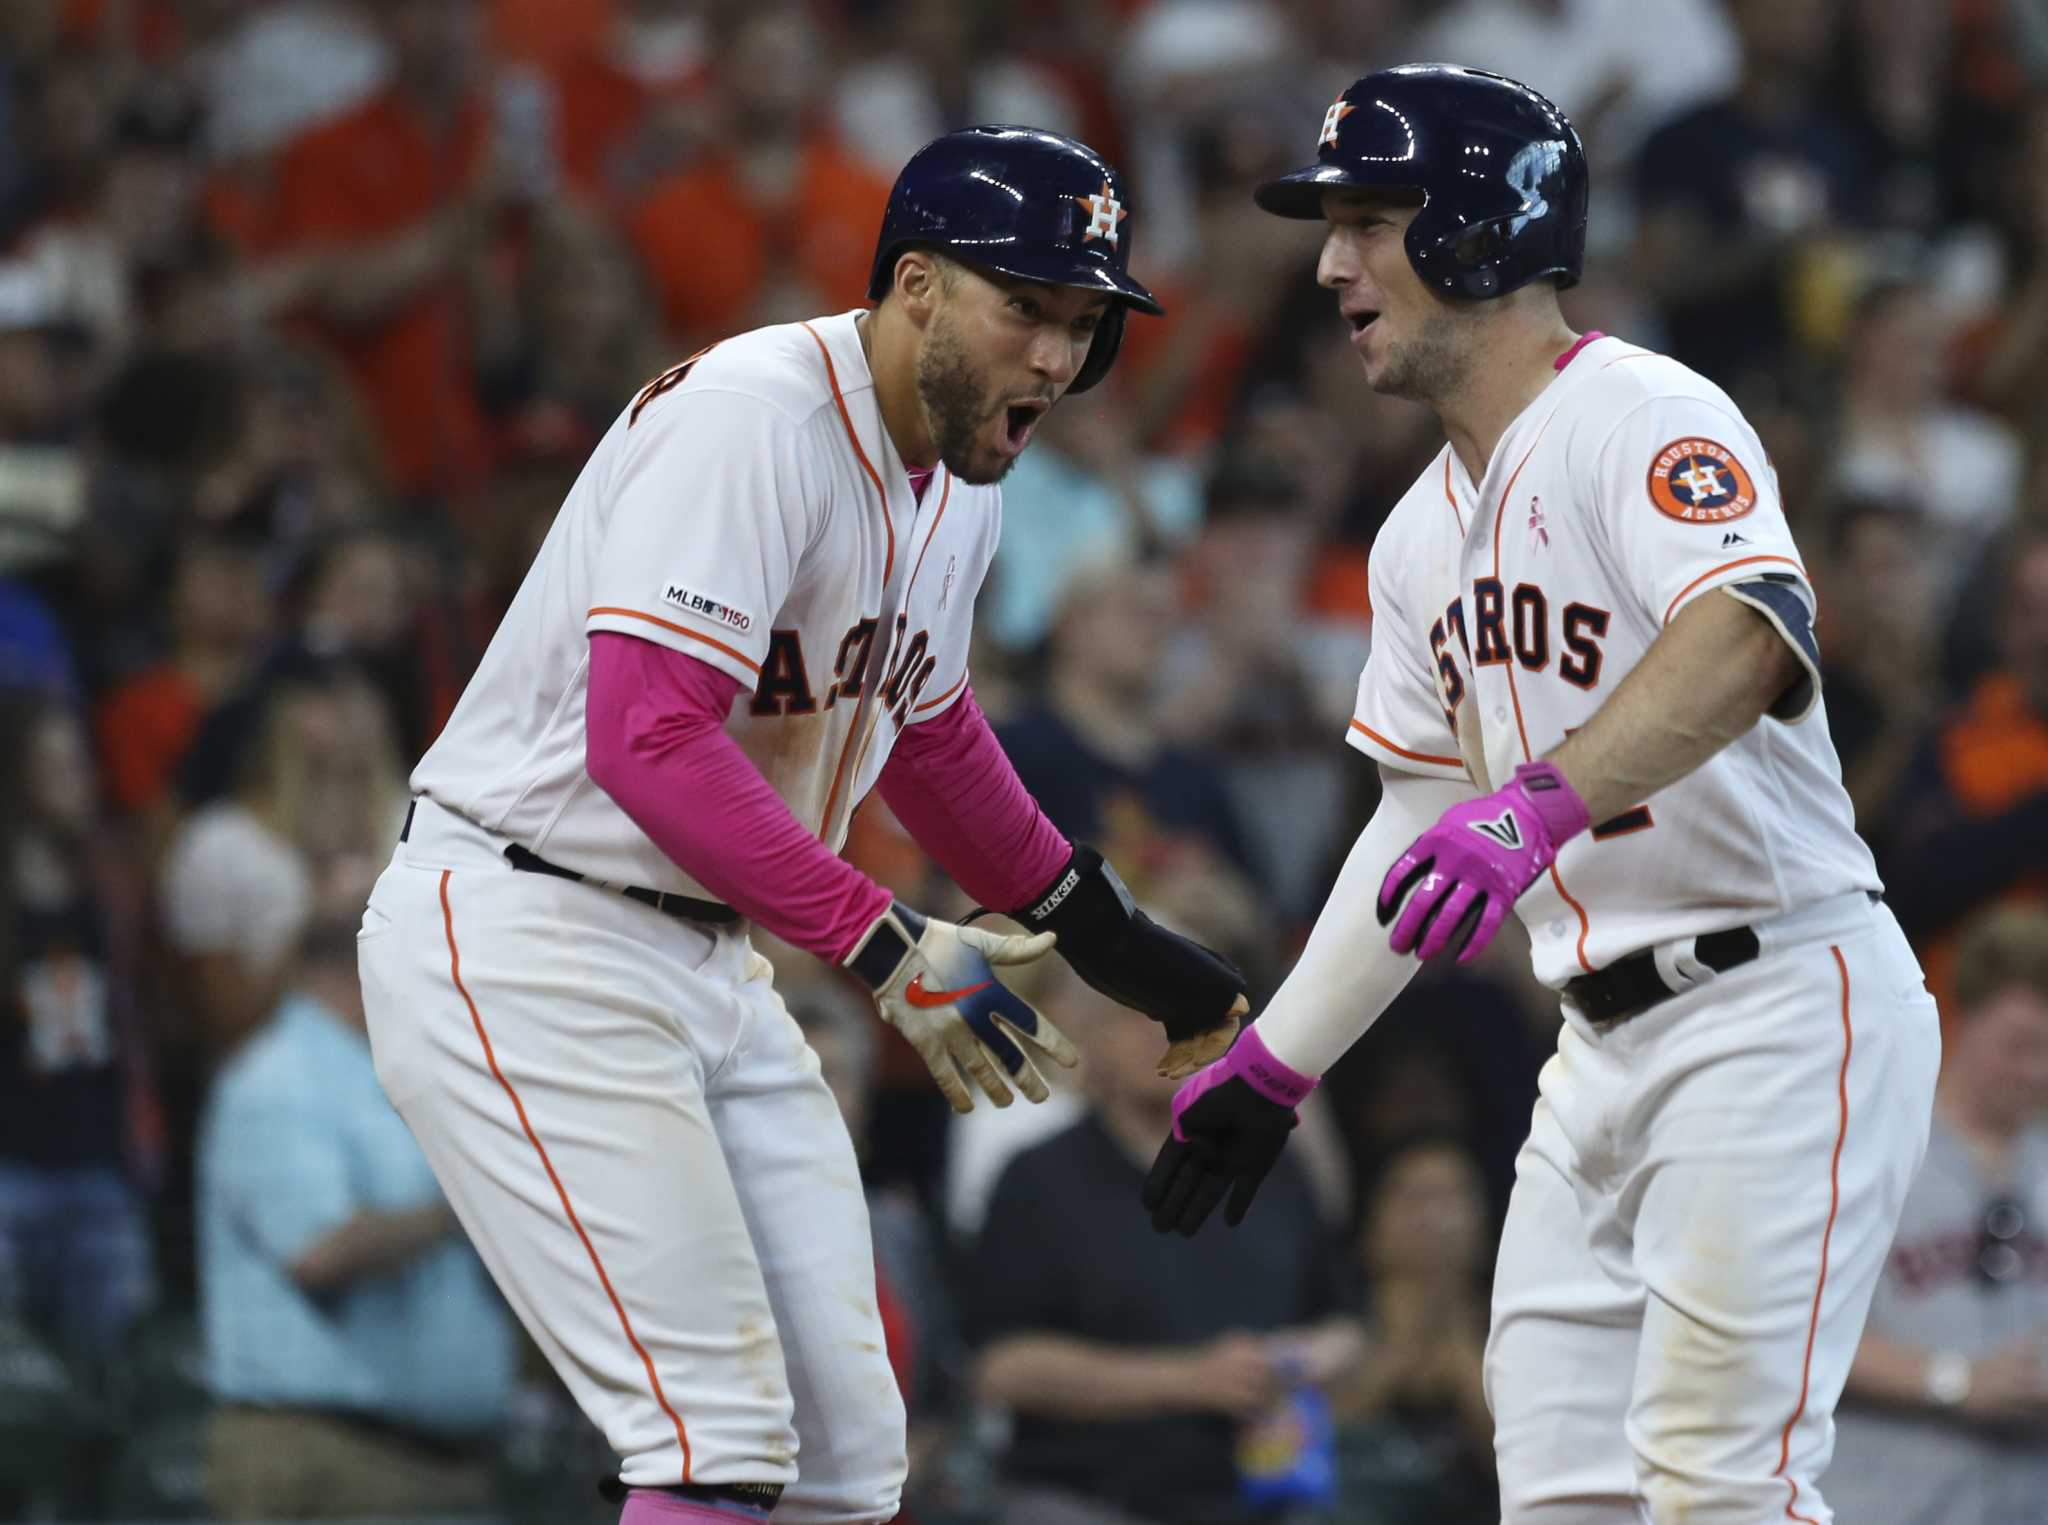 George Springer packs pink Mother's Day bat for Astros' road trip